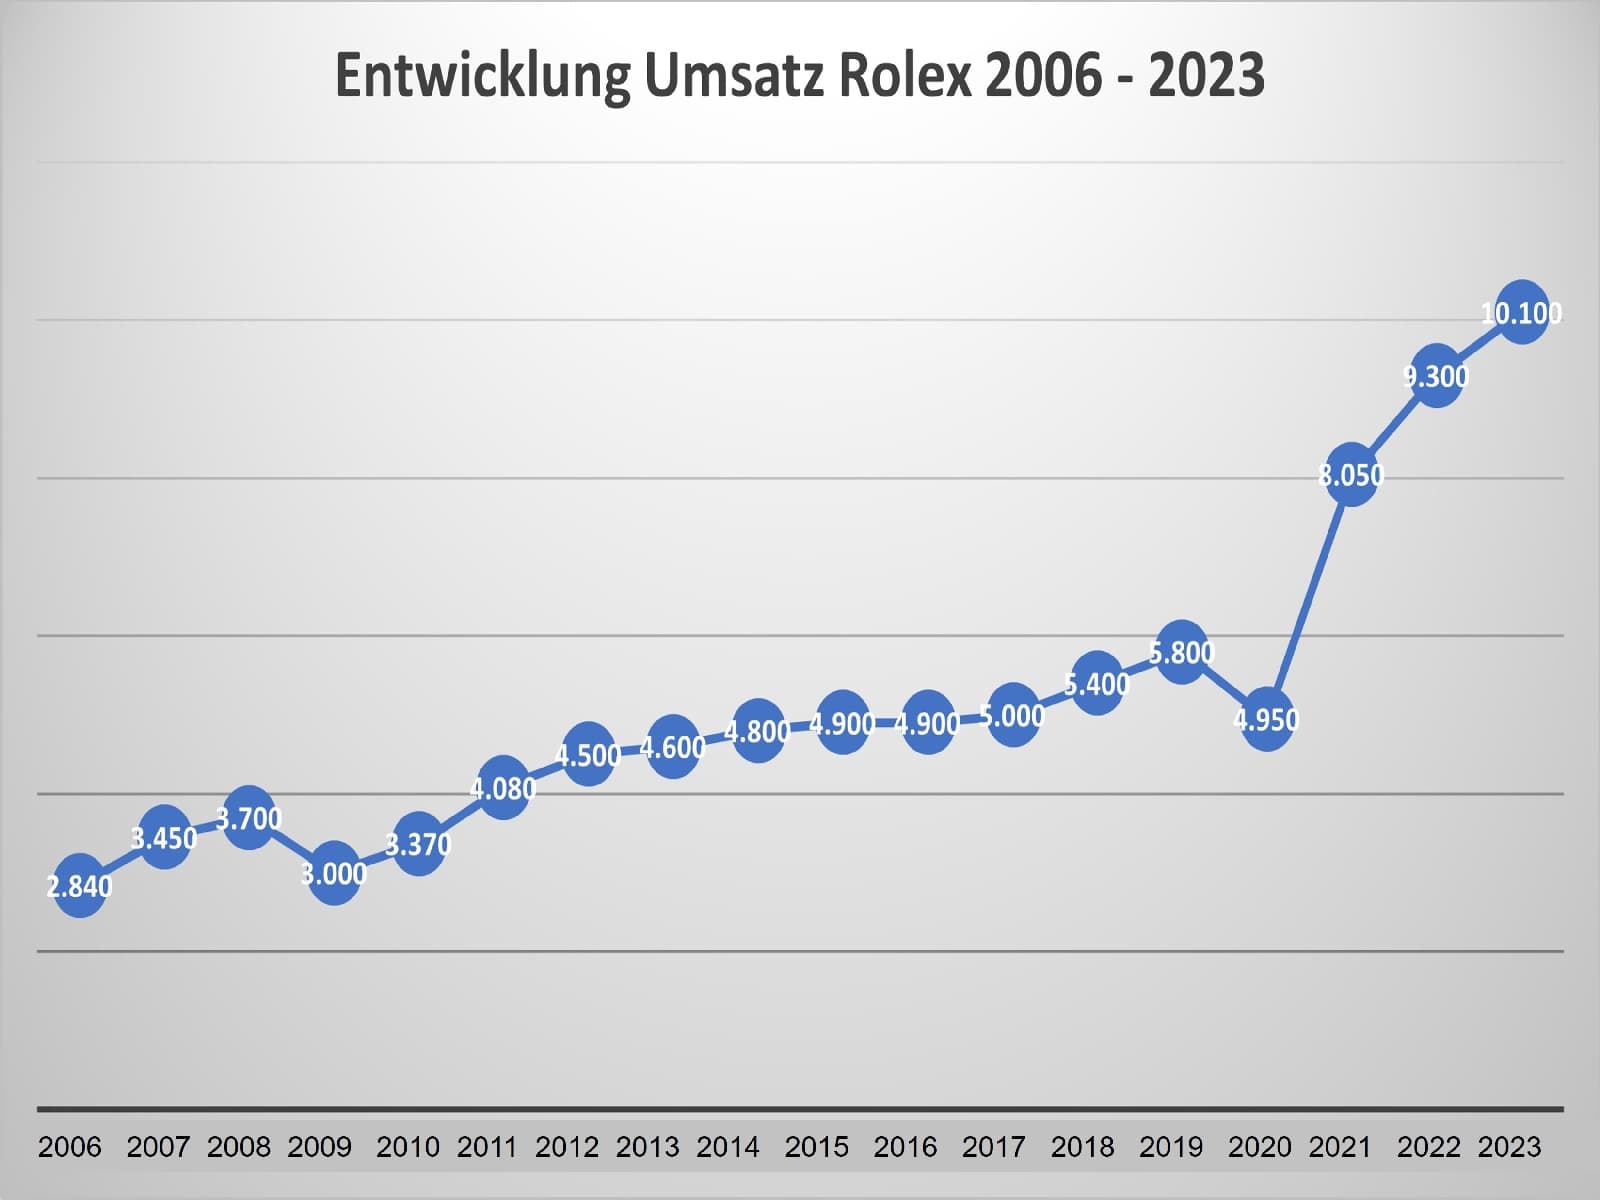 Umsatzentwicklung Rolex 2006 - 2023